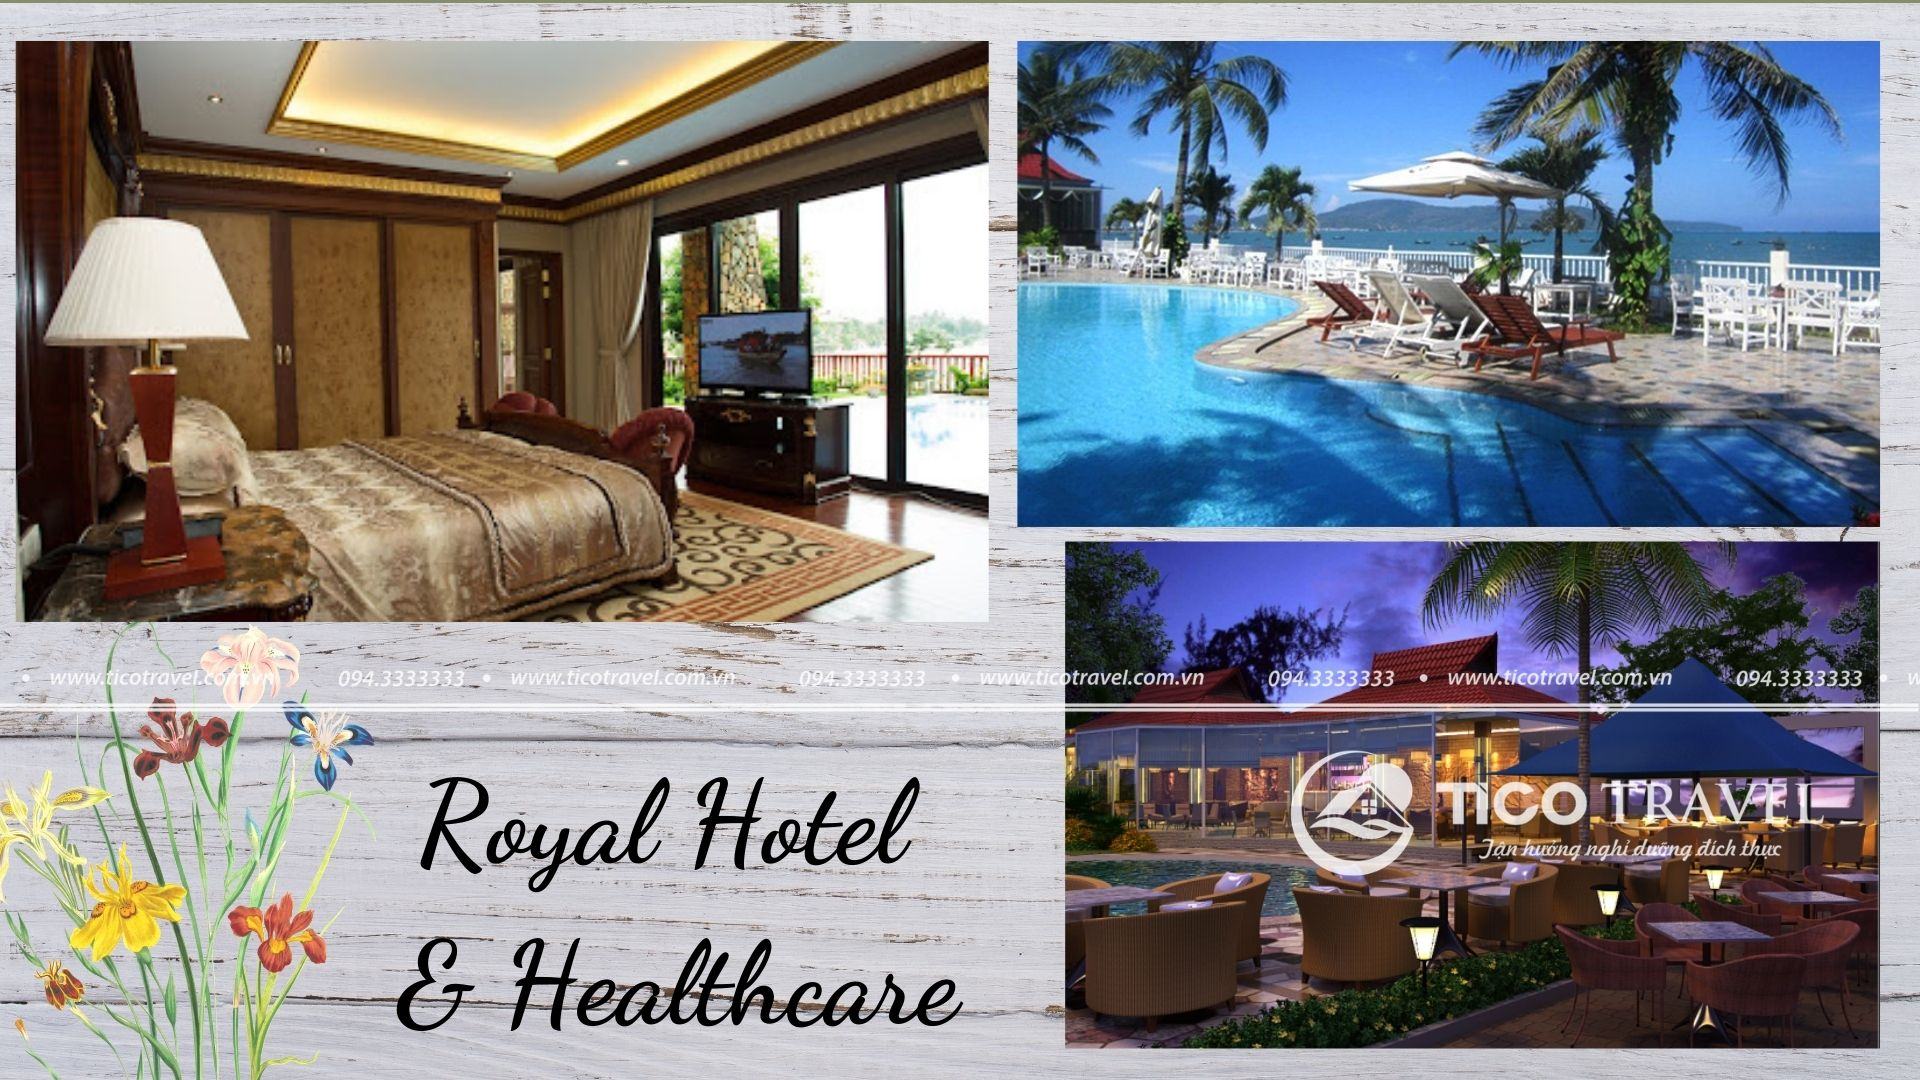 Ảnh chụp toàn cảnh tại Royal Hotel & Healthcare Resort Quy Nhon